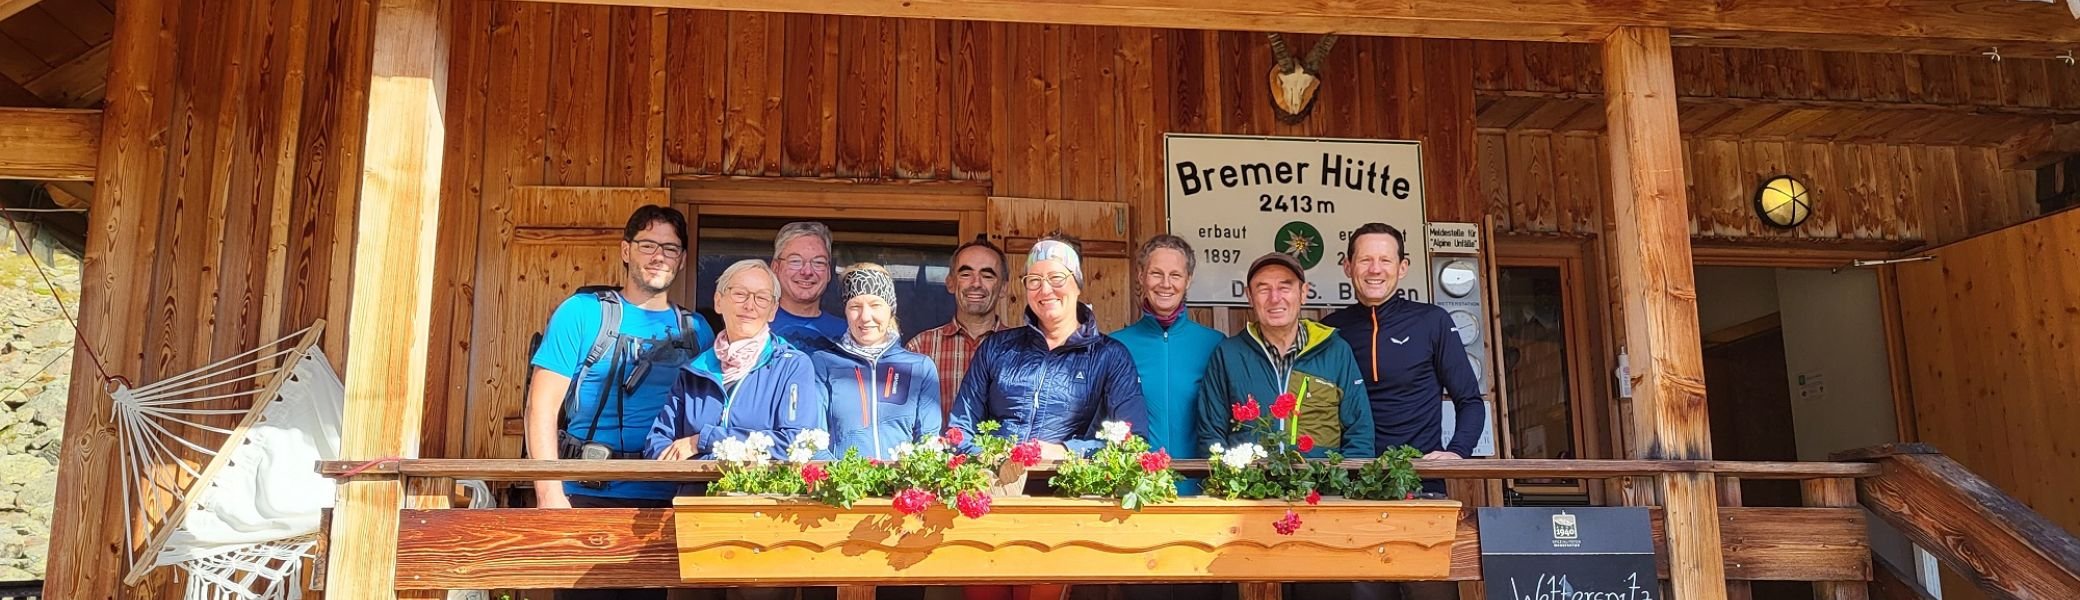 Gruppenfoto vor der Bremer Hütte | © Christine Kraus